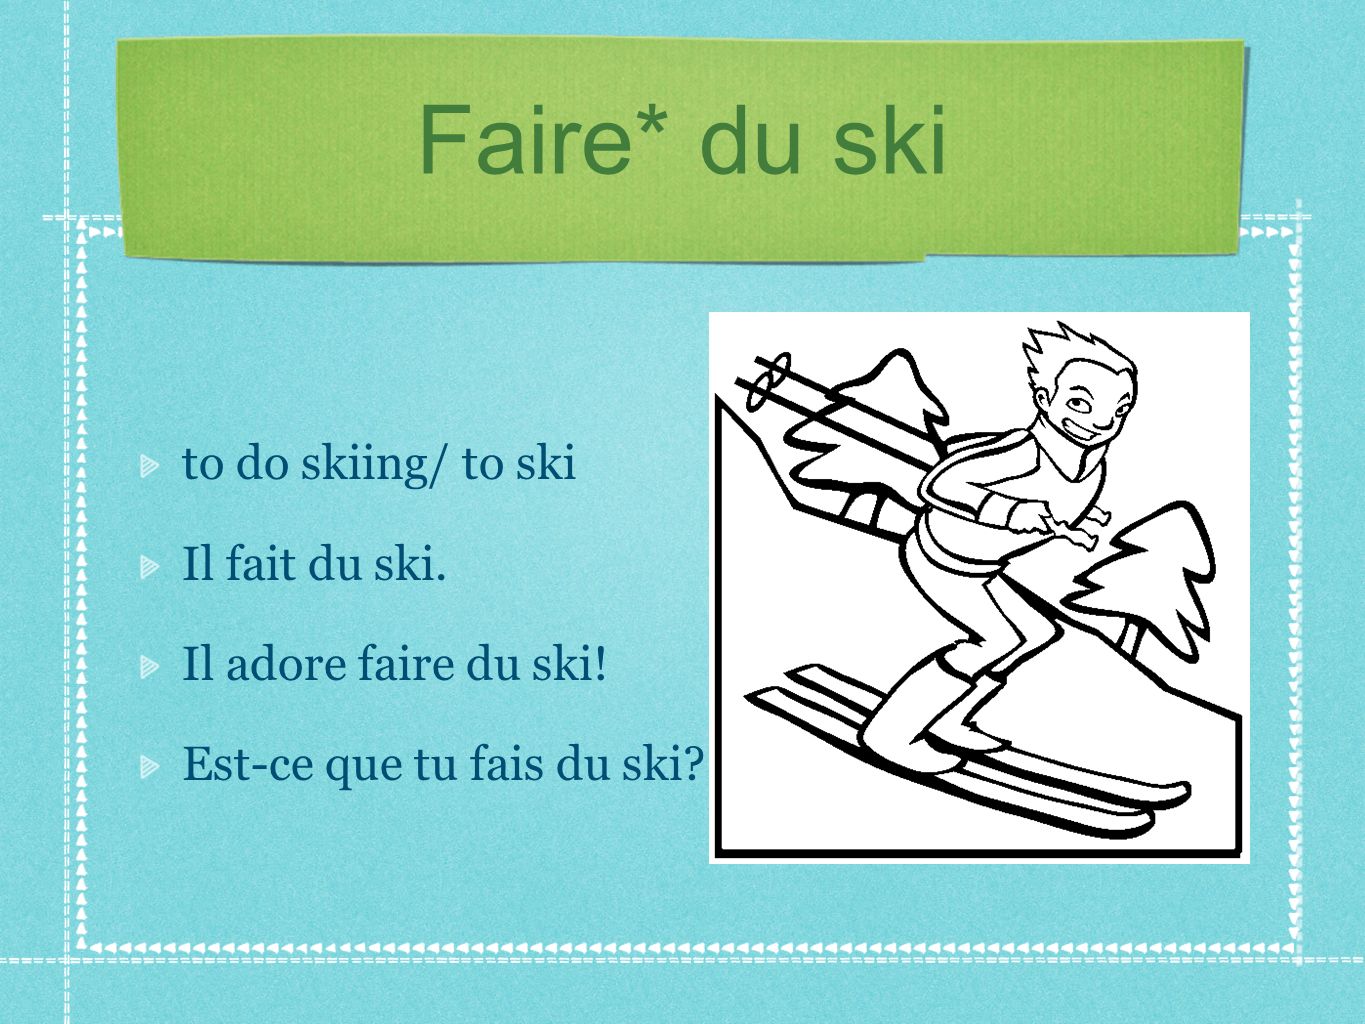 Faire* du ski to do skiing/ to ski Il fait du ski.